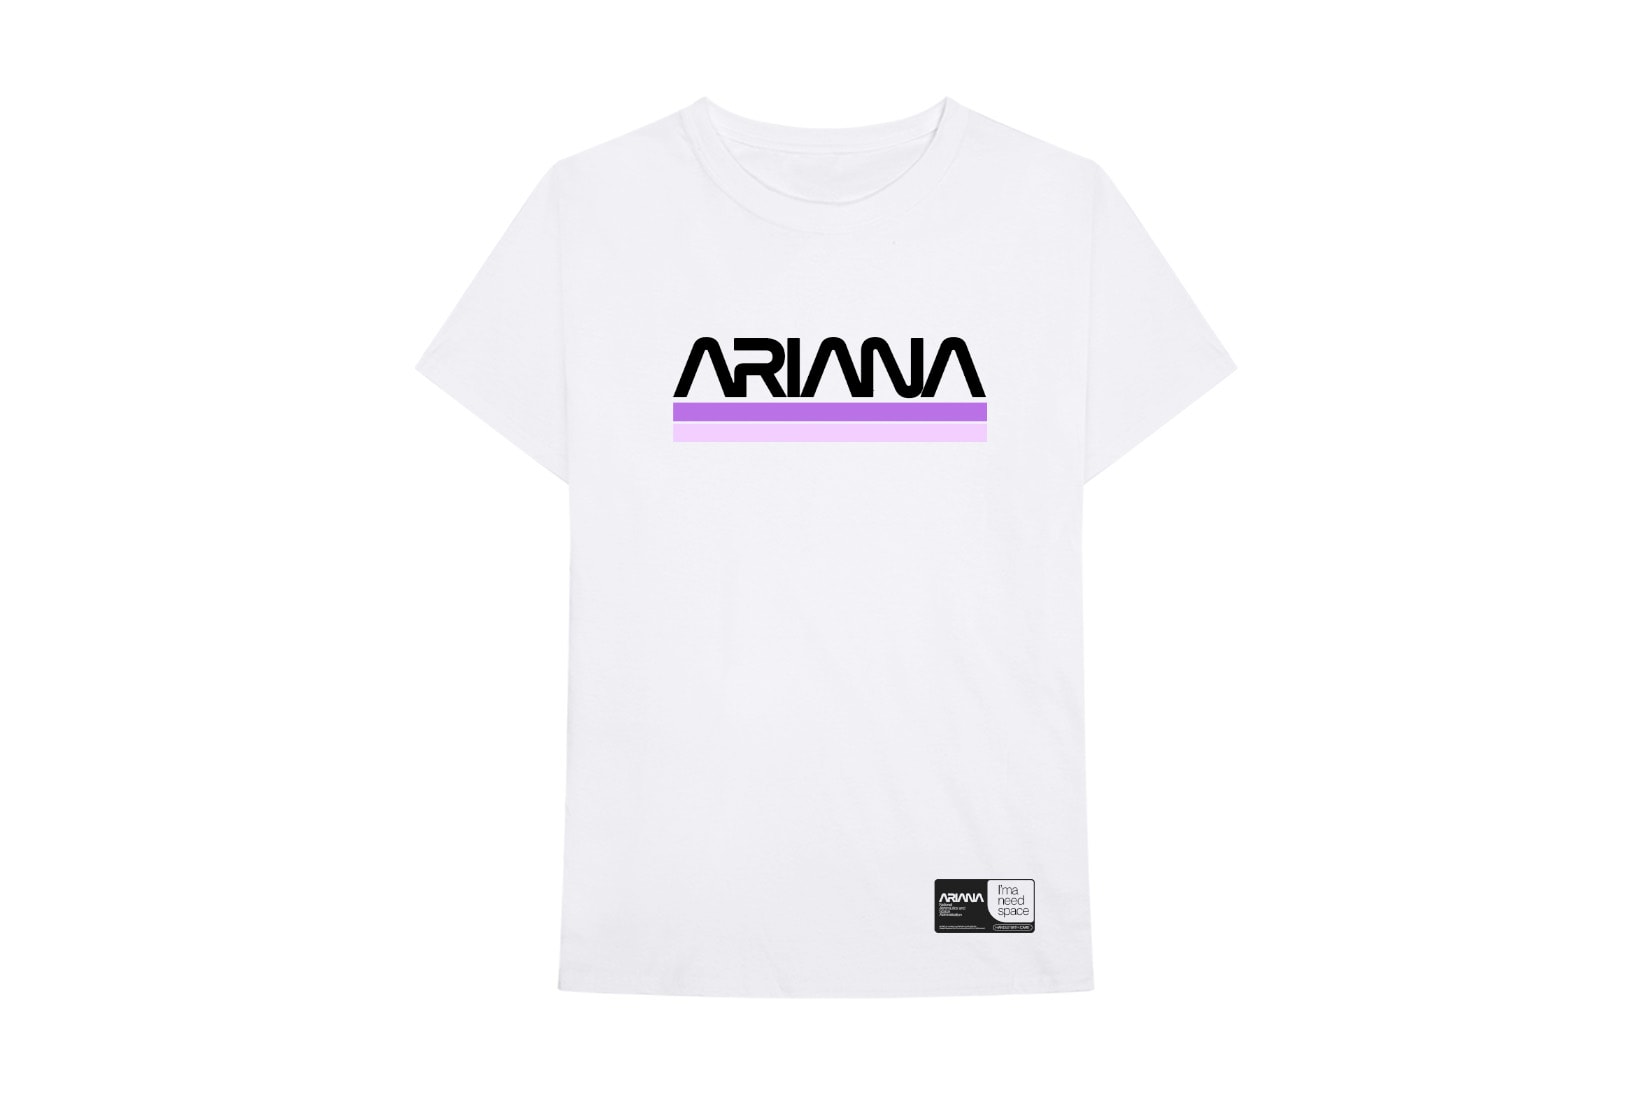 Ariana Grande NASA Coachella Merch Sweatshirt Hoodie T-Shirt Mask Glasses Anorak Aricehlla 